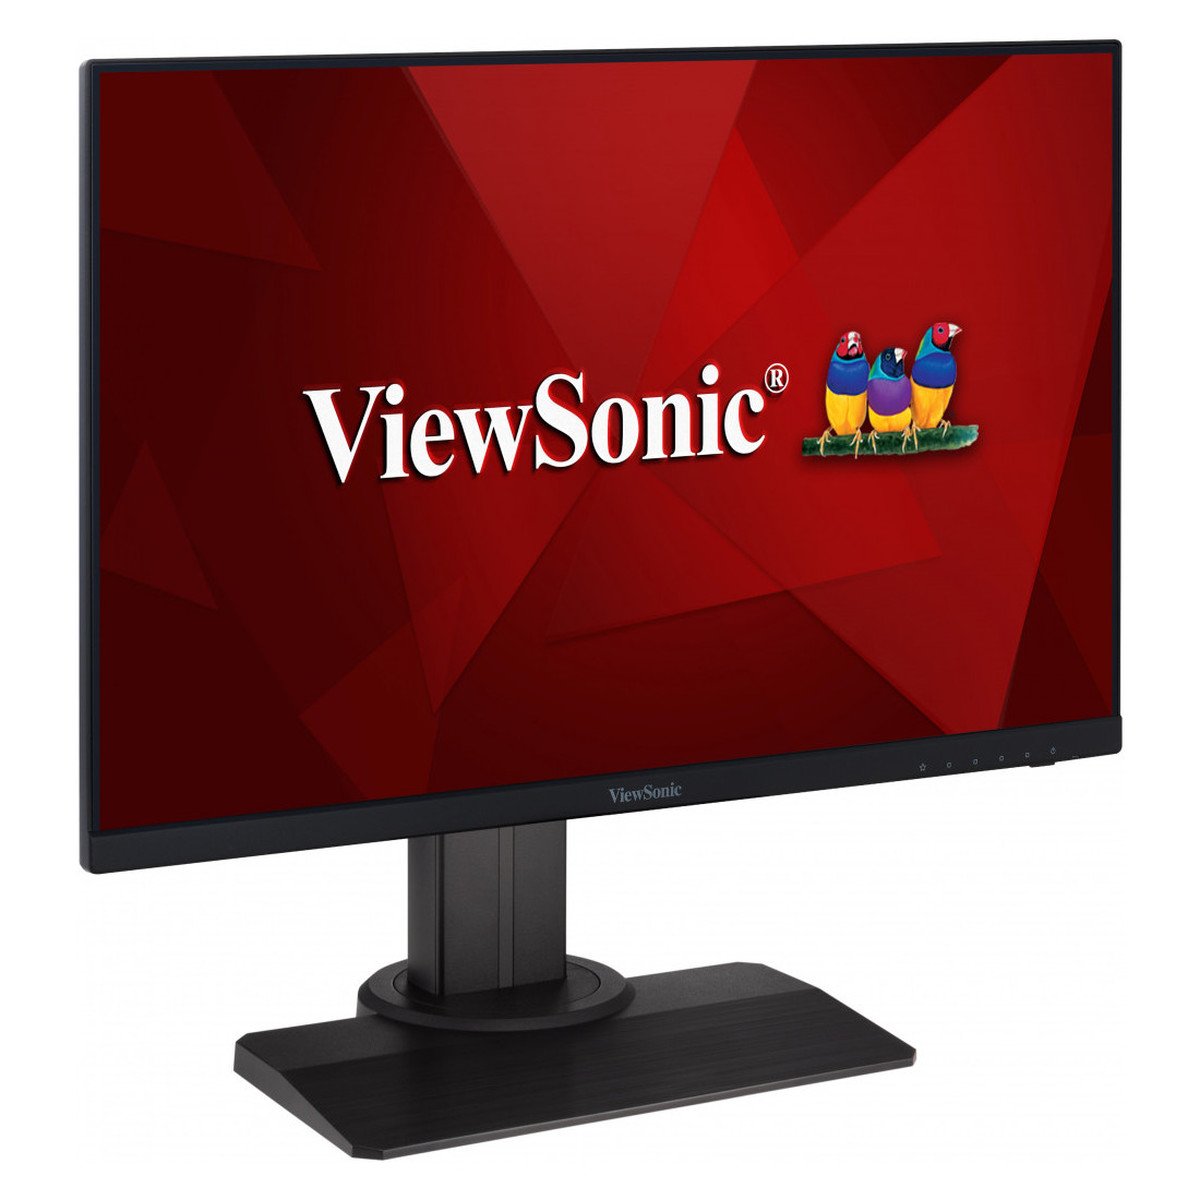 ViewSonic XG2431 : un bon petit écran, diablement rapide